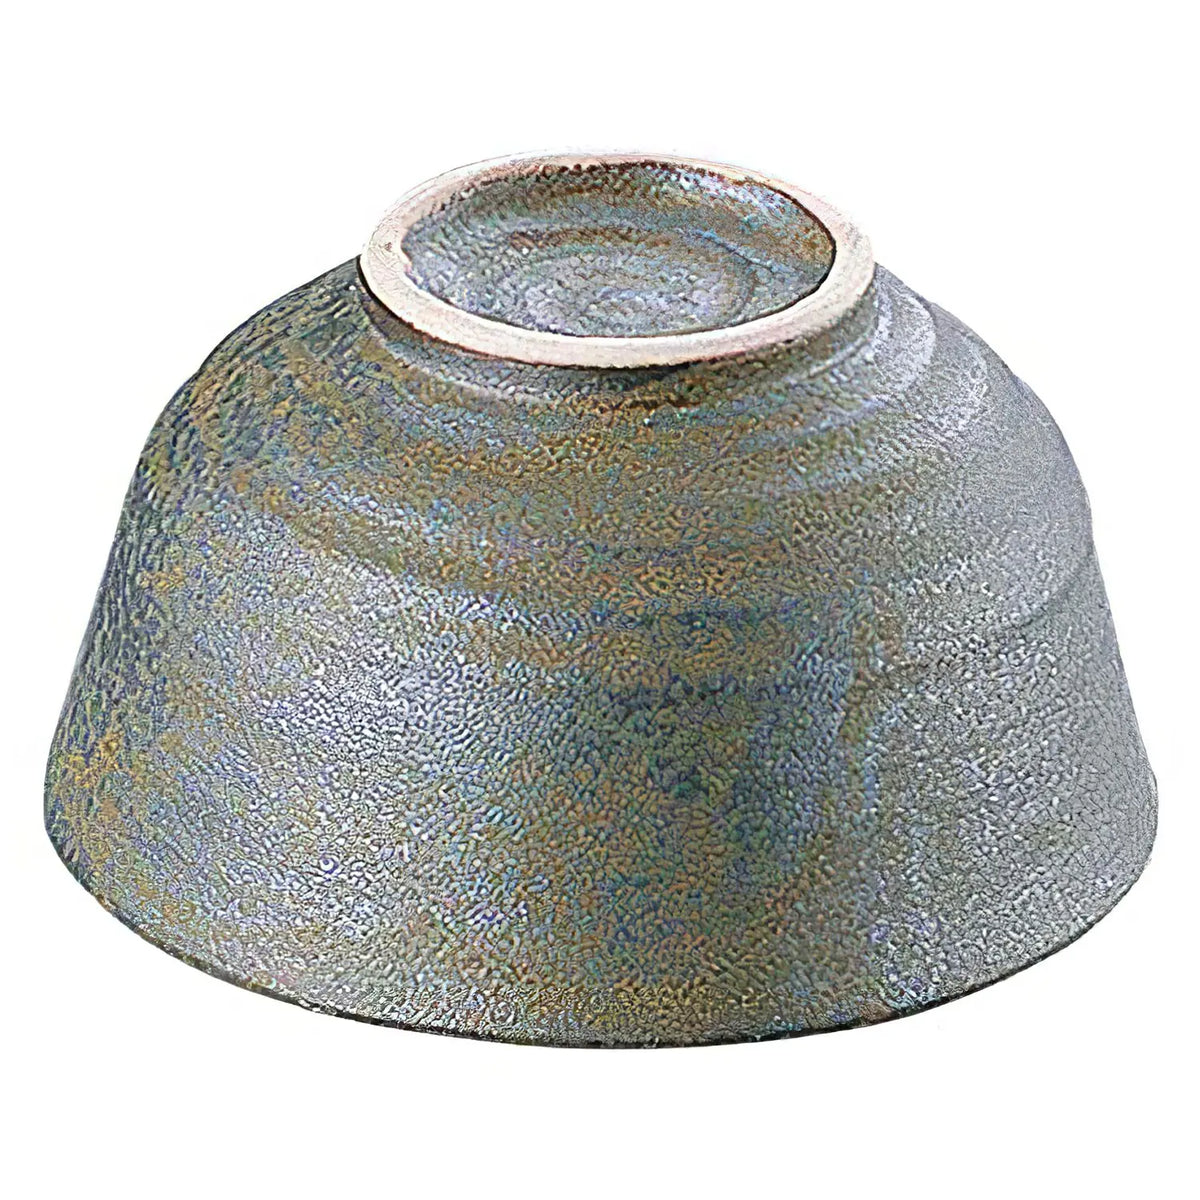 TKG Seto Ware Ceramic Rice Bowl Natural Black 11.5cm